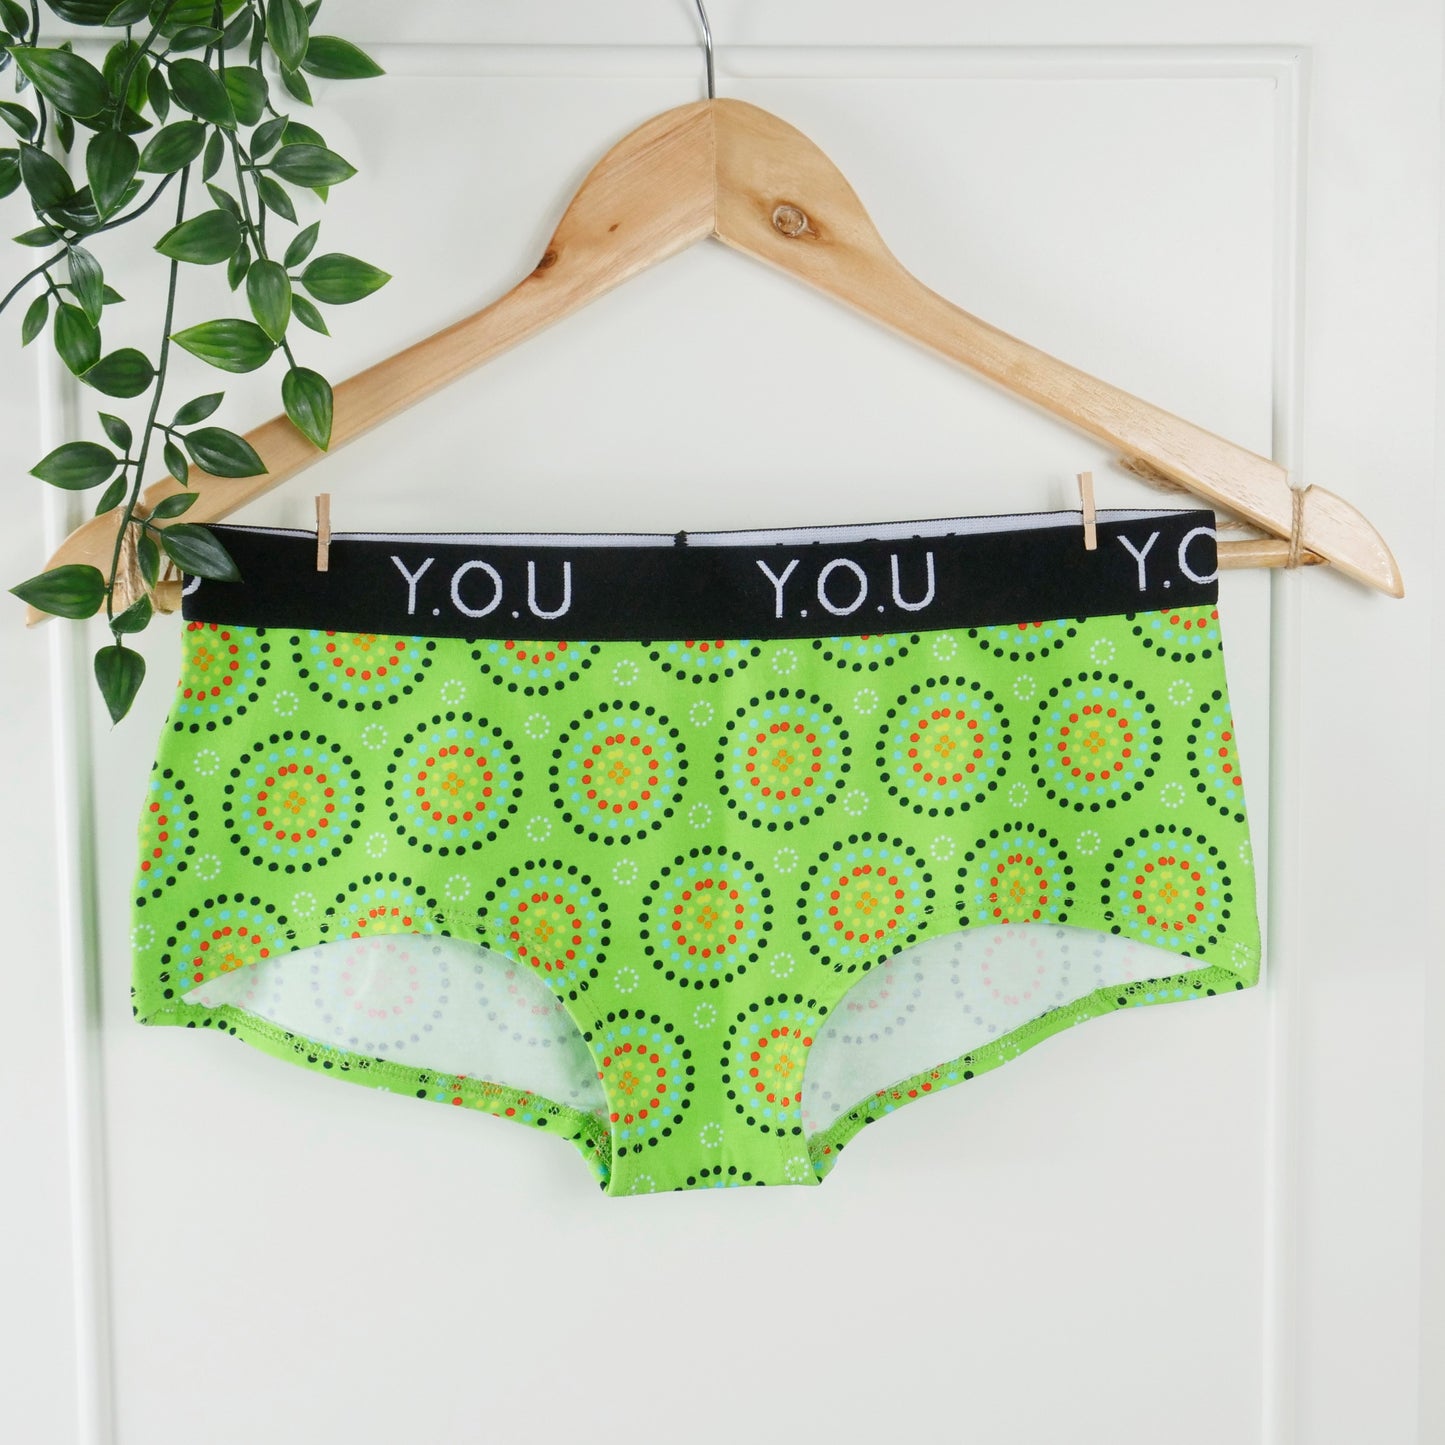 Women’s organic cotton boy shorts with Y.O.U elastic - Green Mara design